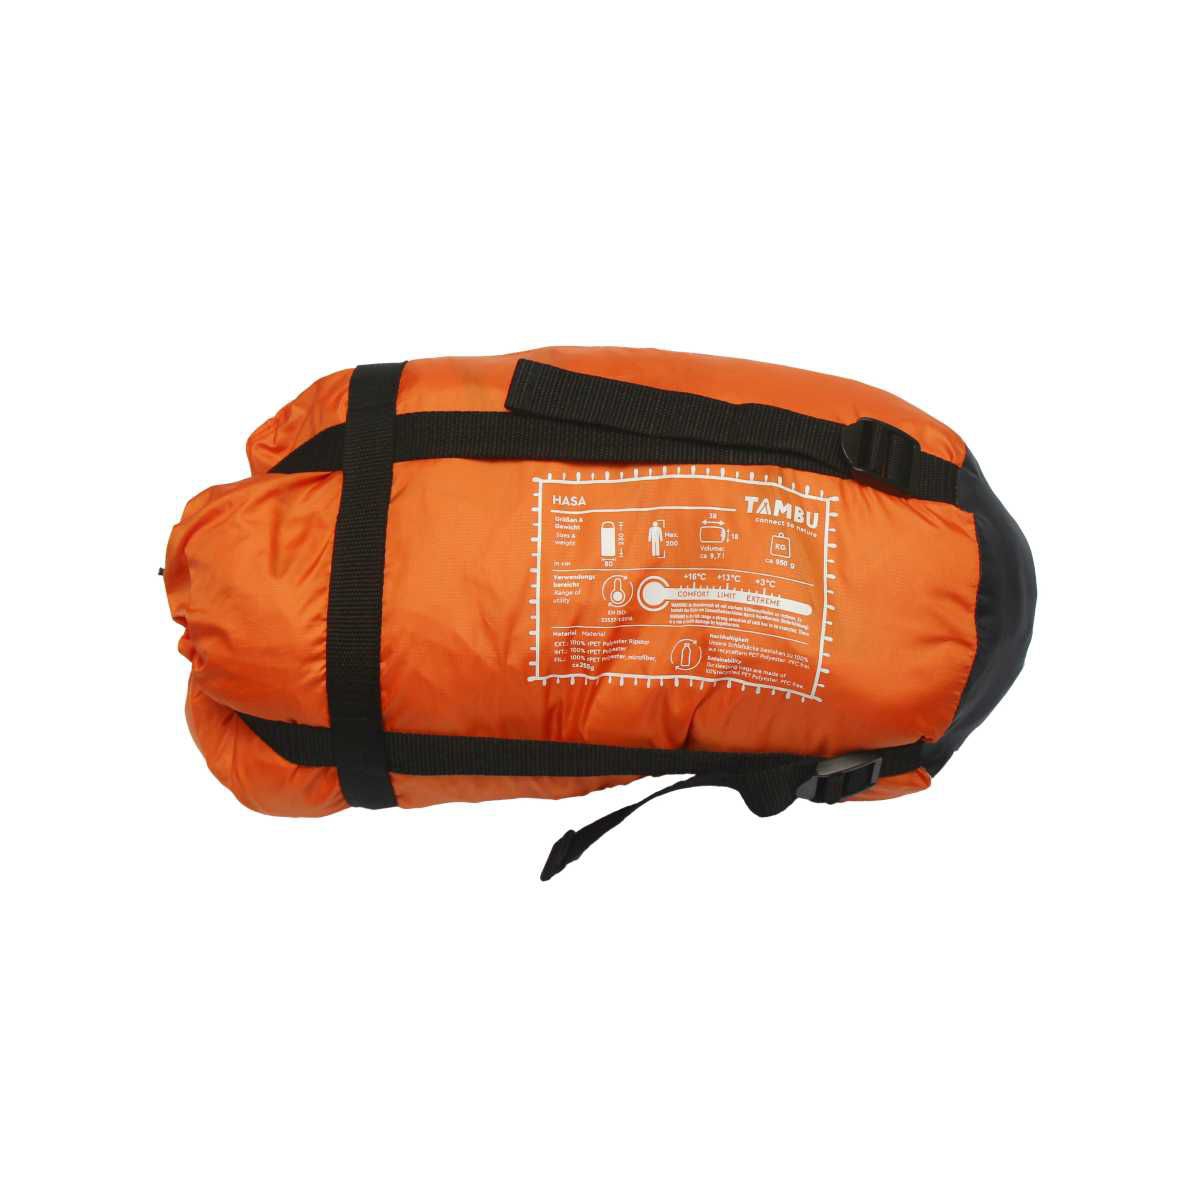 TAMBU HASA Deckenschlafsack mit Kapuze 950 g Orange - 20211009